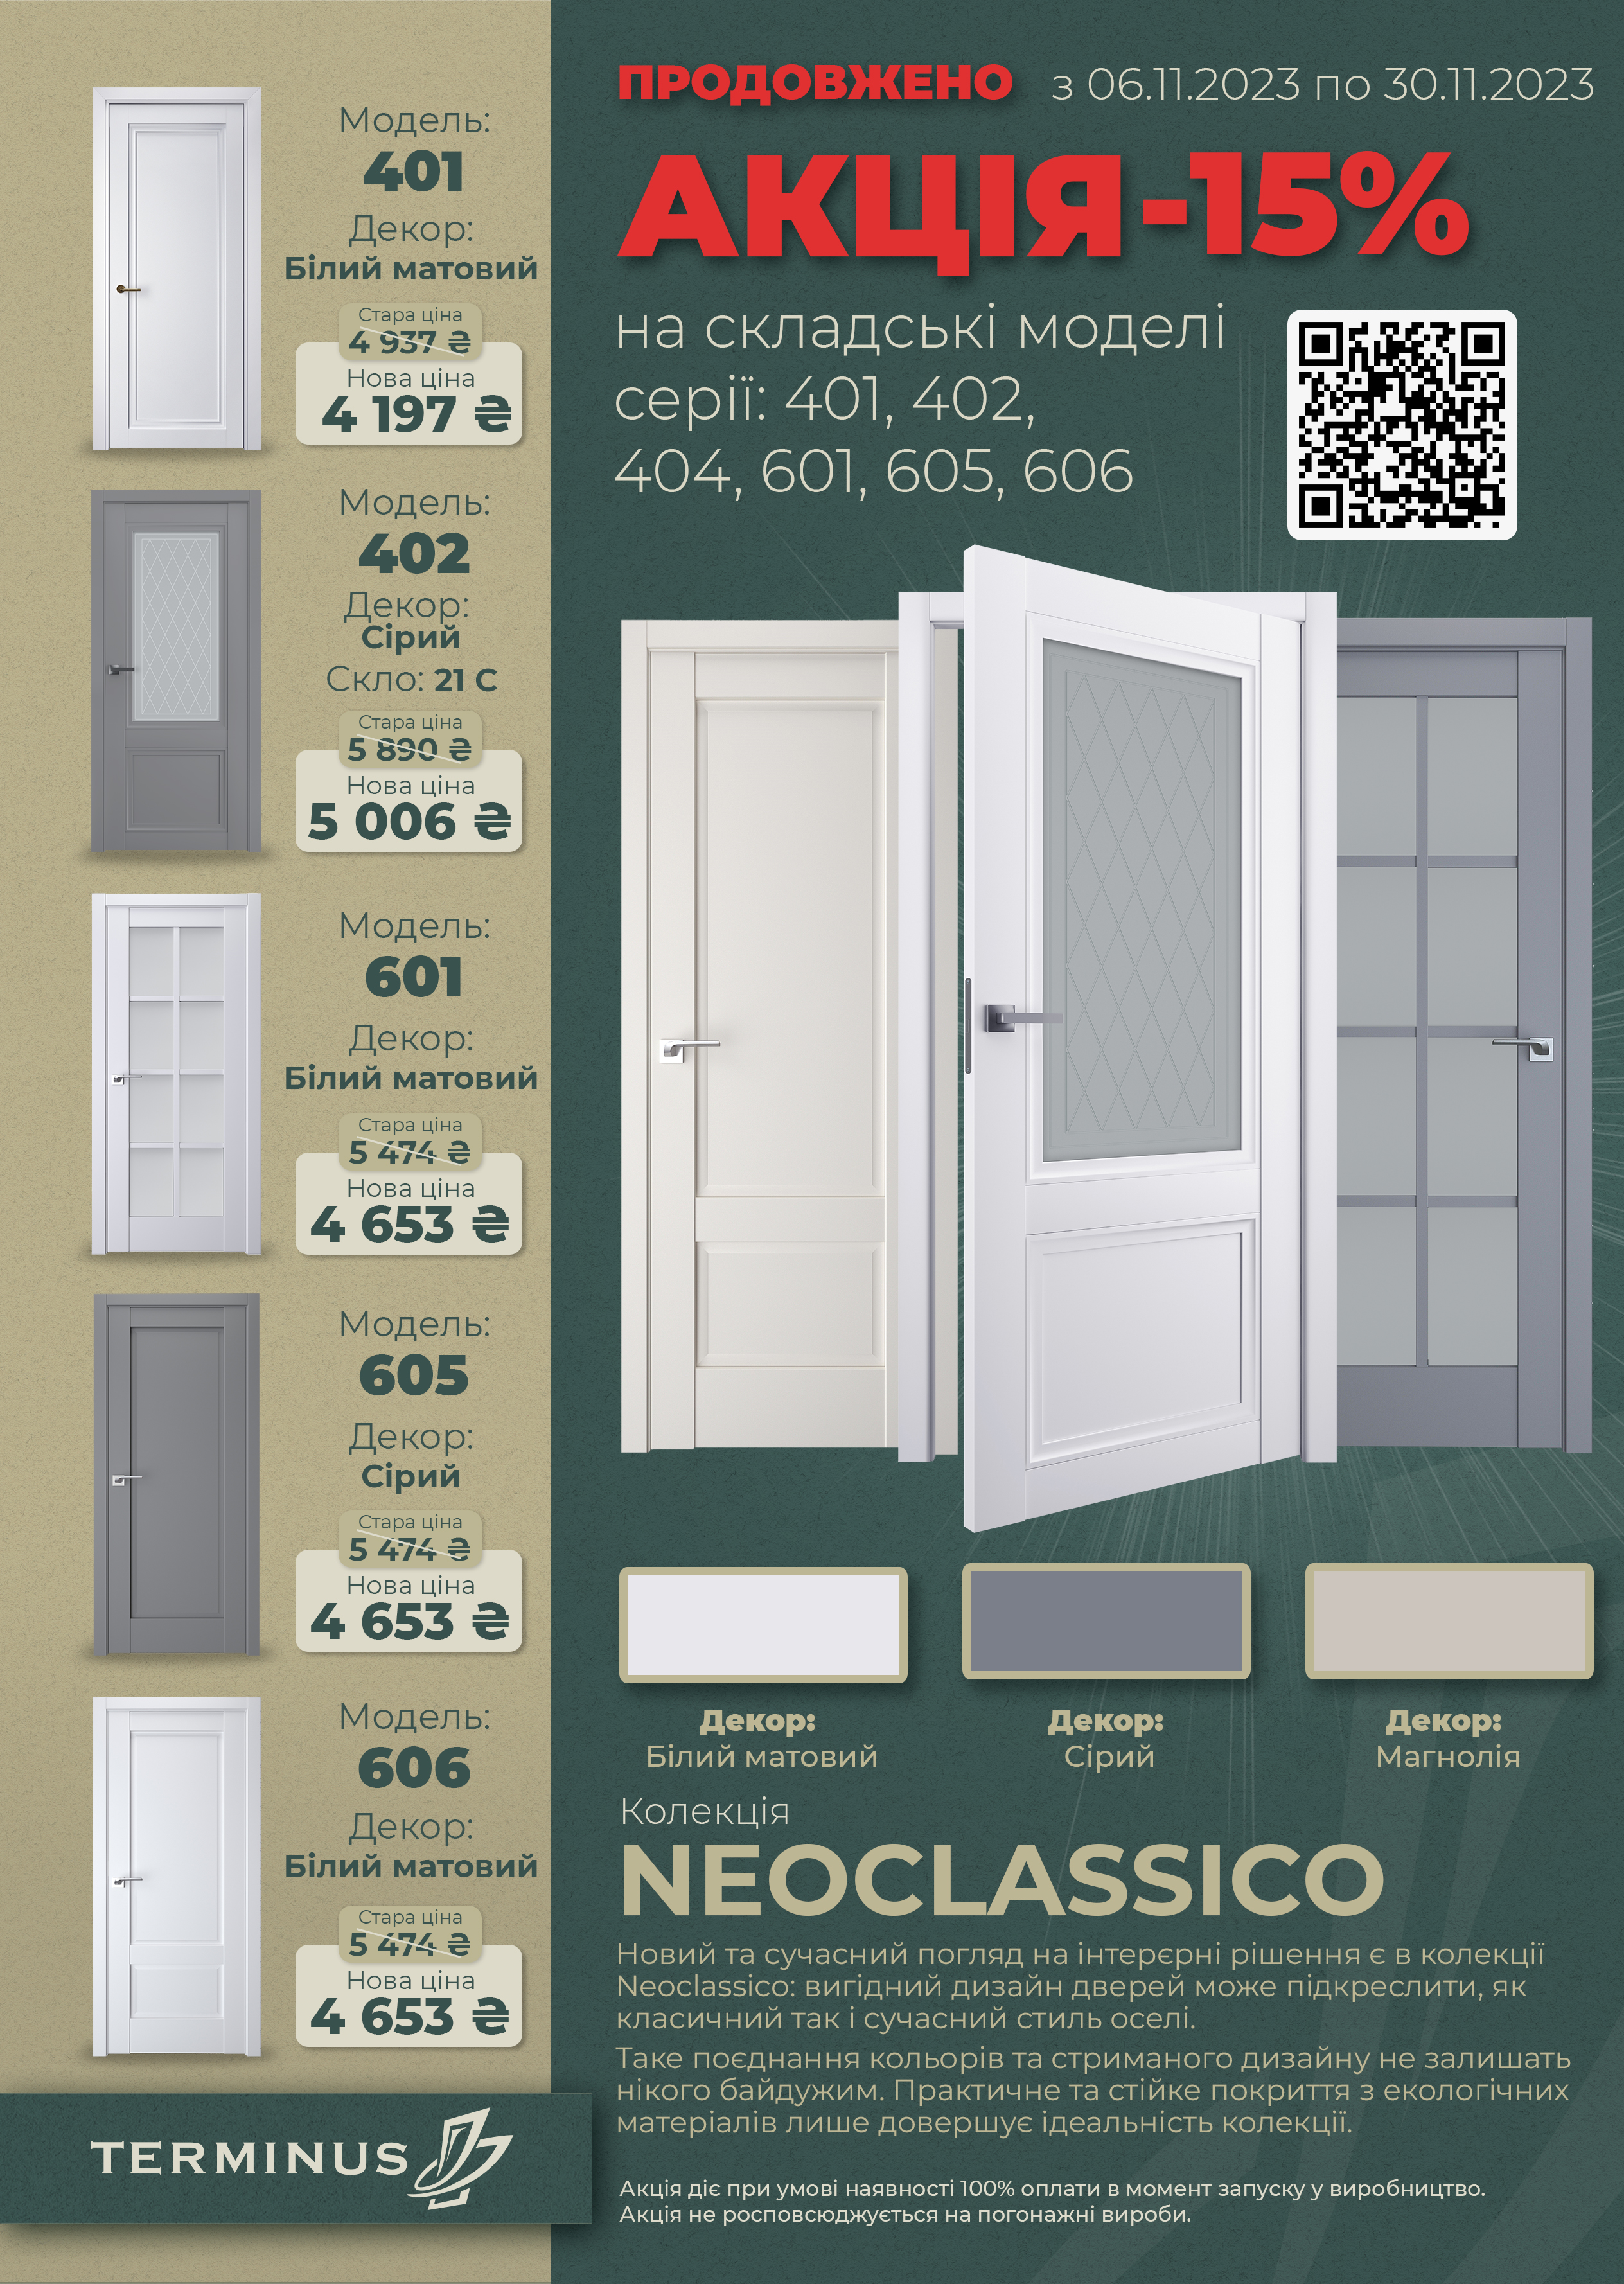 Акція Термінус -15% на серію NeoClassico 06.11.2023 - 30.11.2023 року.